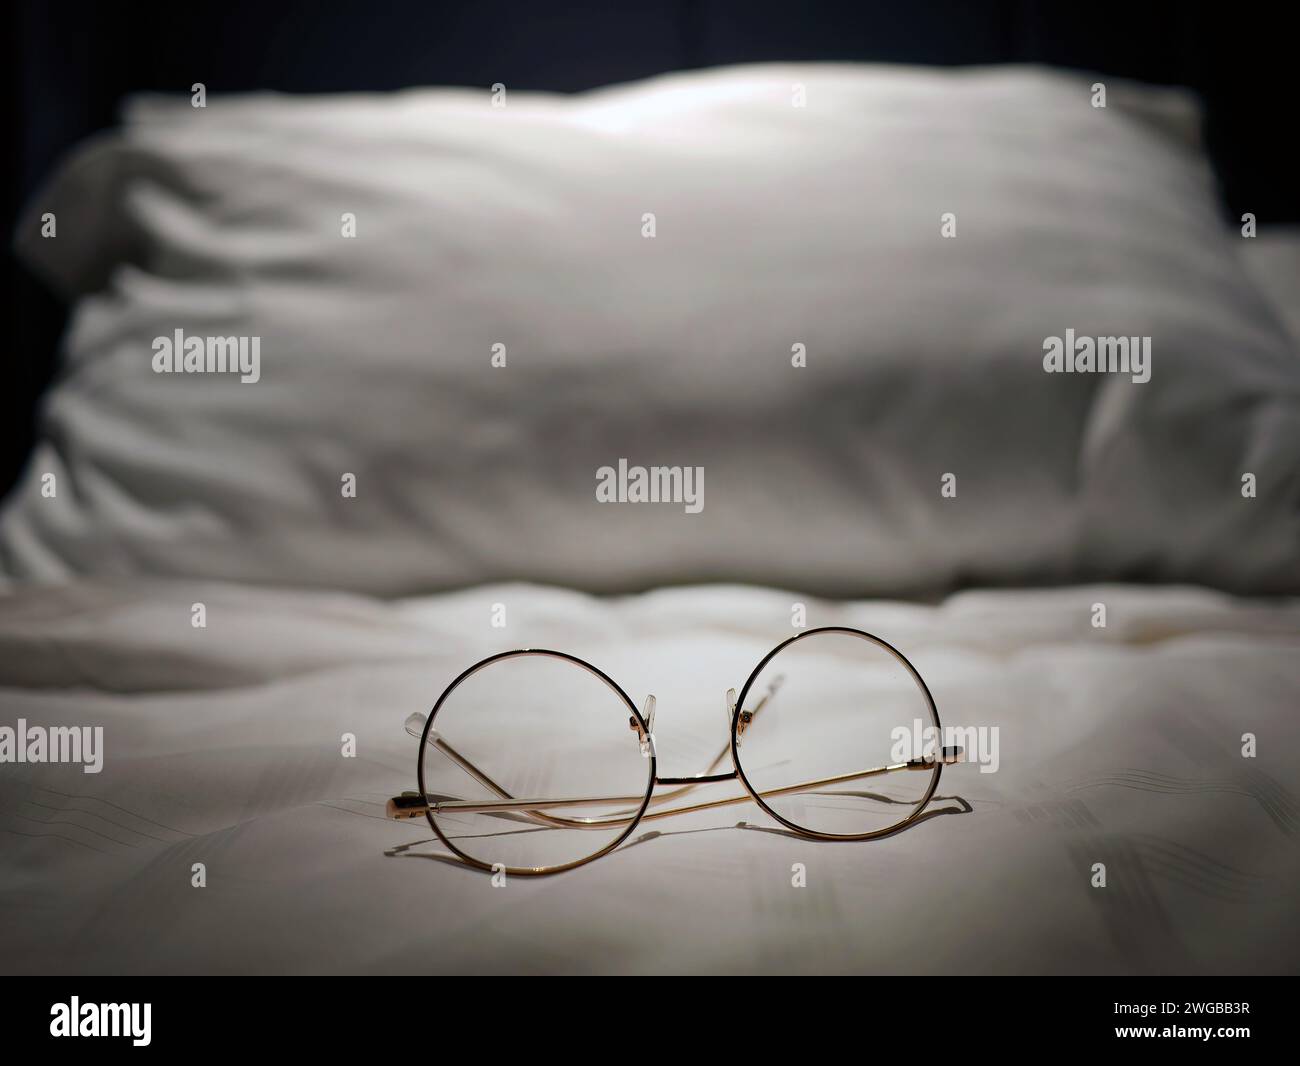 Eine Brillenoptik auf weißem Leinenbett, Nachtlicht, kurzsichtig, kurzsichtig, weitsichtig, Brillen, Business-Produkte, entspannen Sie sich oder ruhen Sie sich aus oder schlafen sie Stockfoto